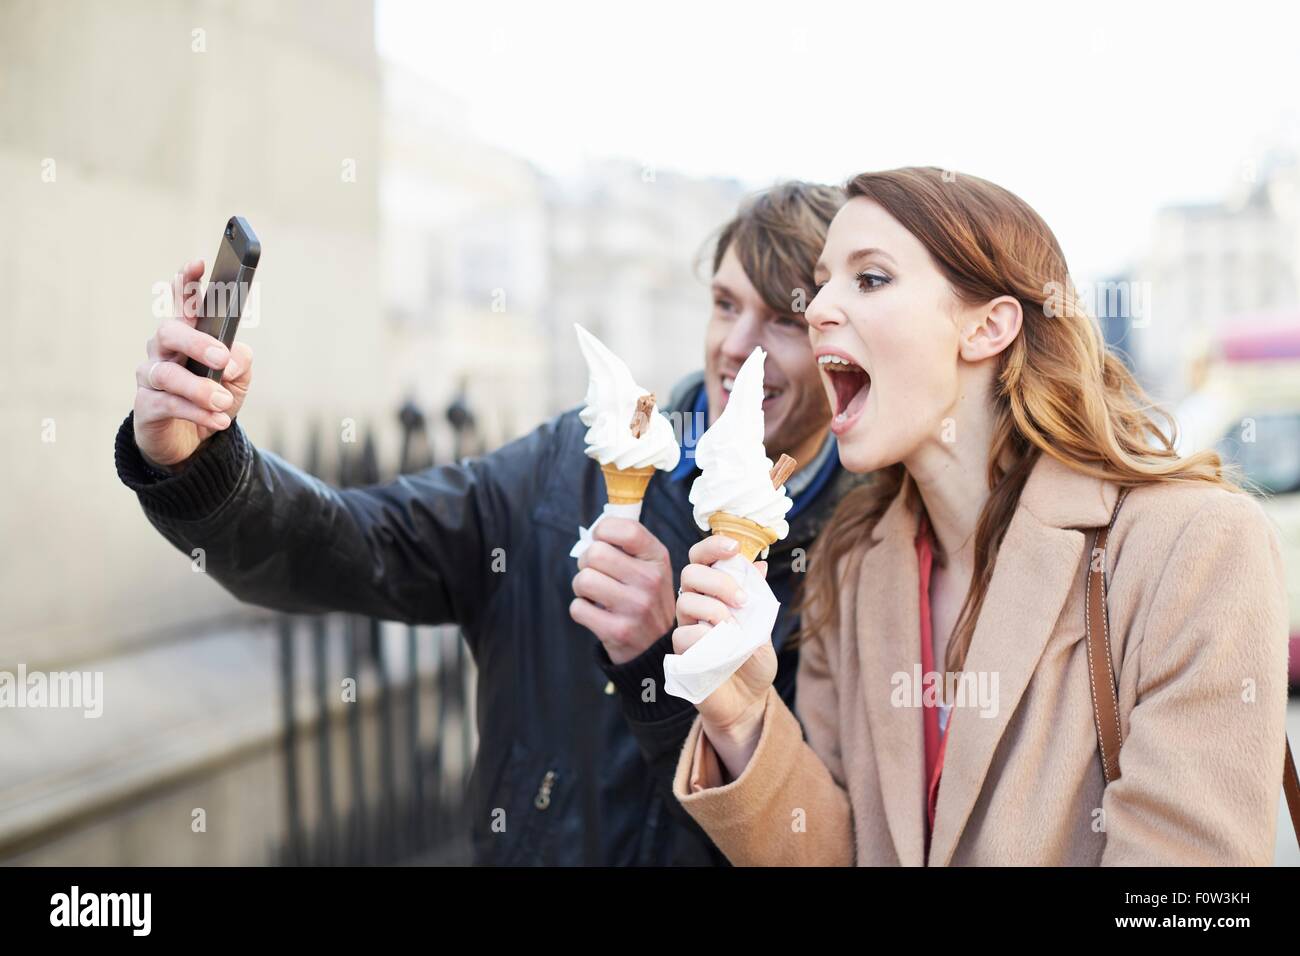 Pareja con conos de helado tomando selfie smartphone, Londres, Reino Unido. Foto de stock